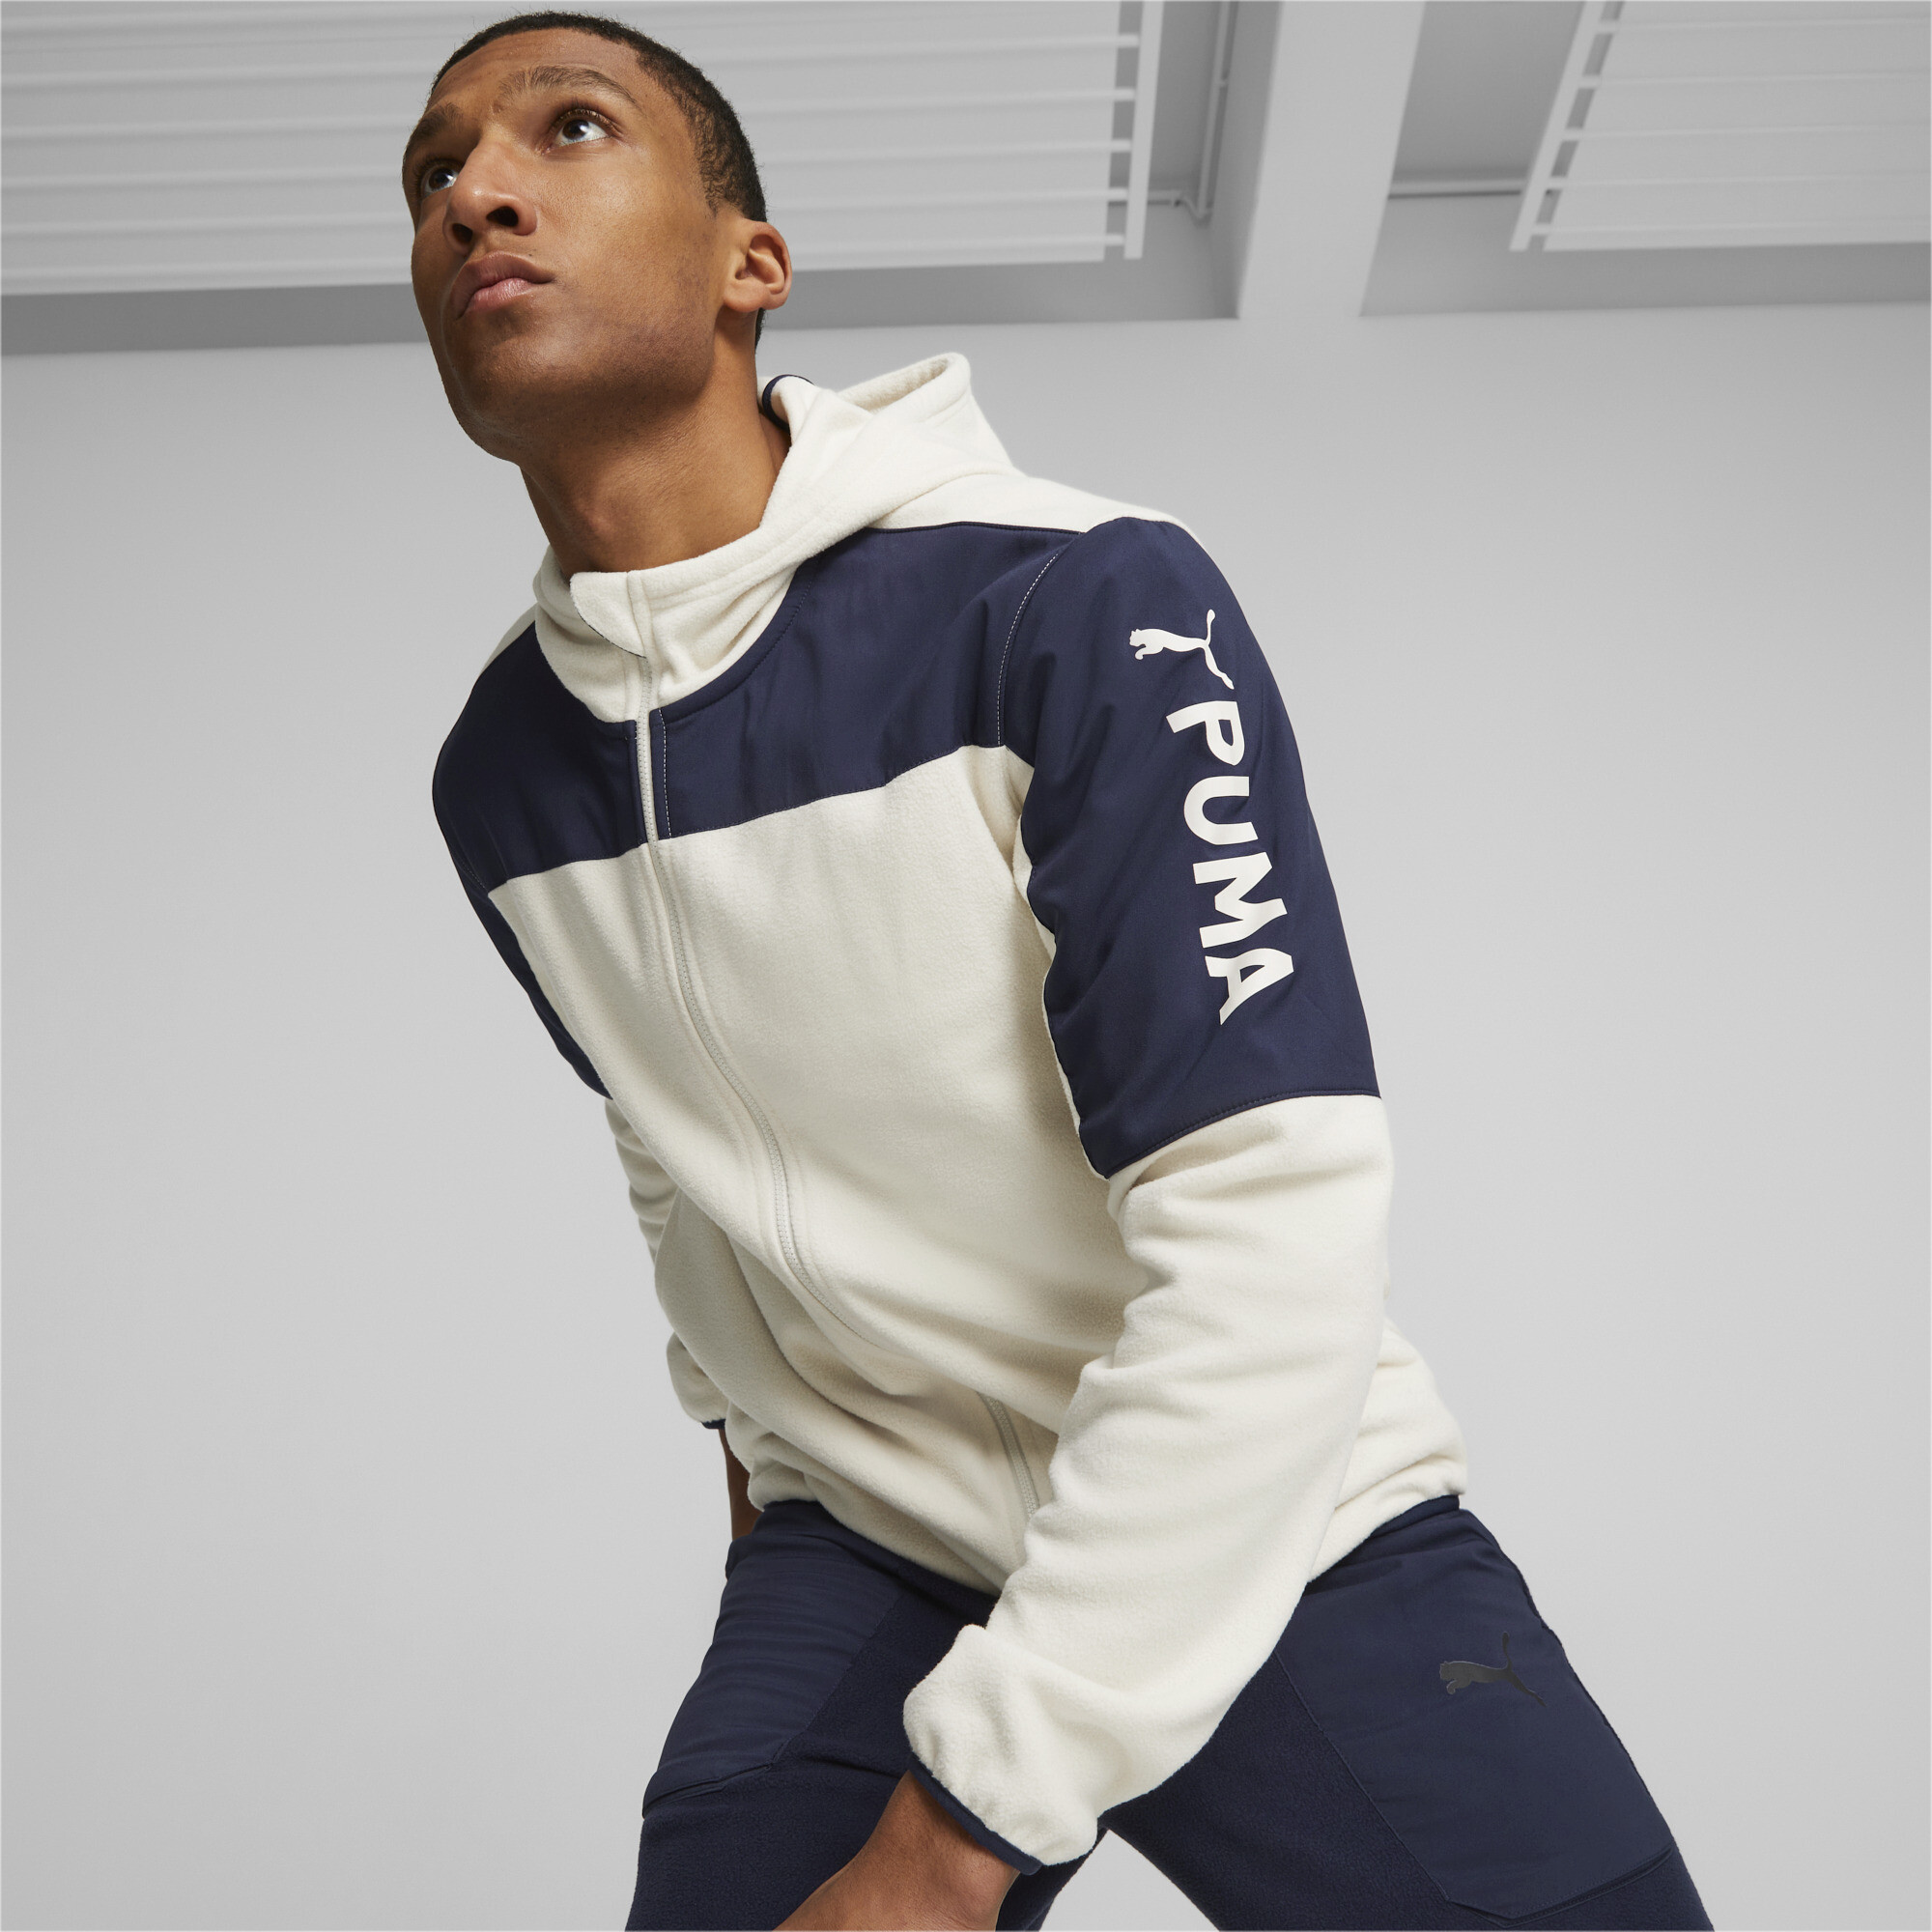 Men's Puma Fit's Hybrid Jacket, White, Size XS, Clothing